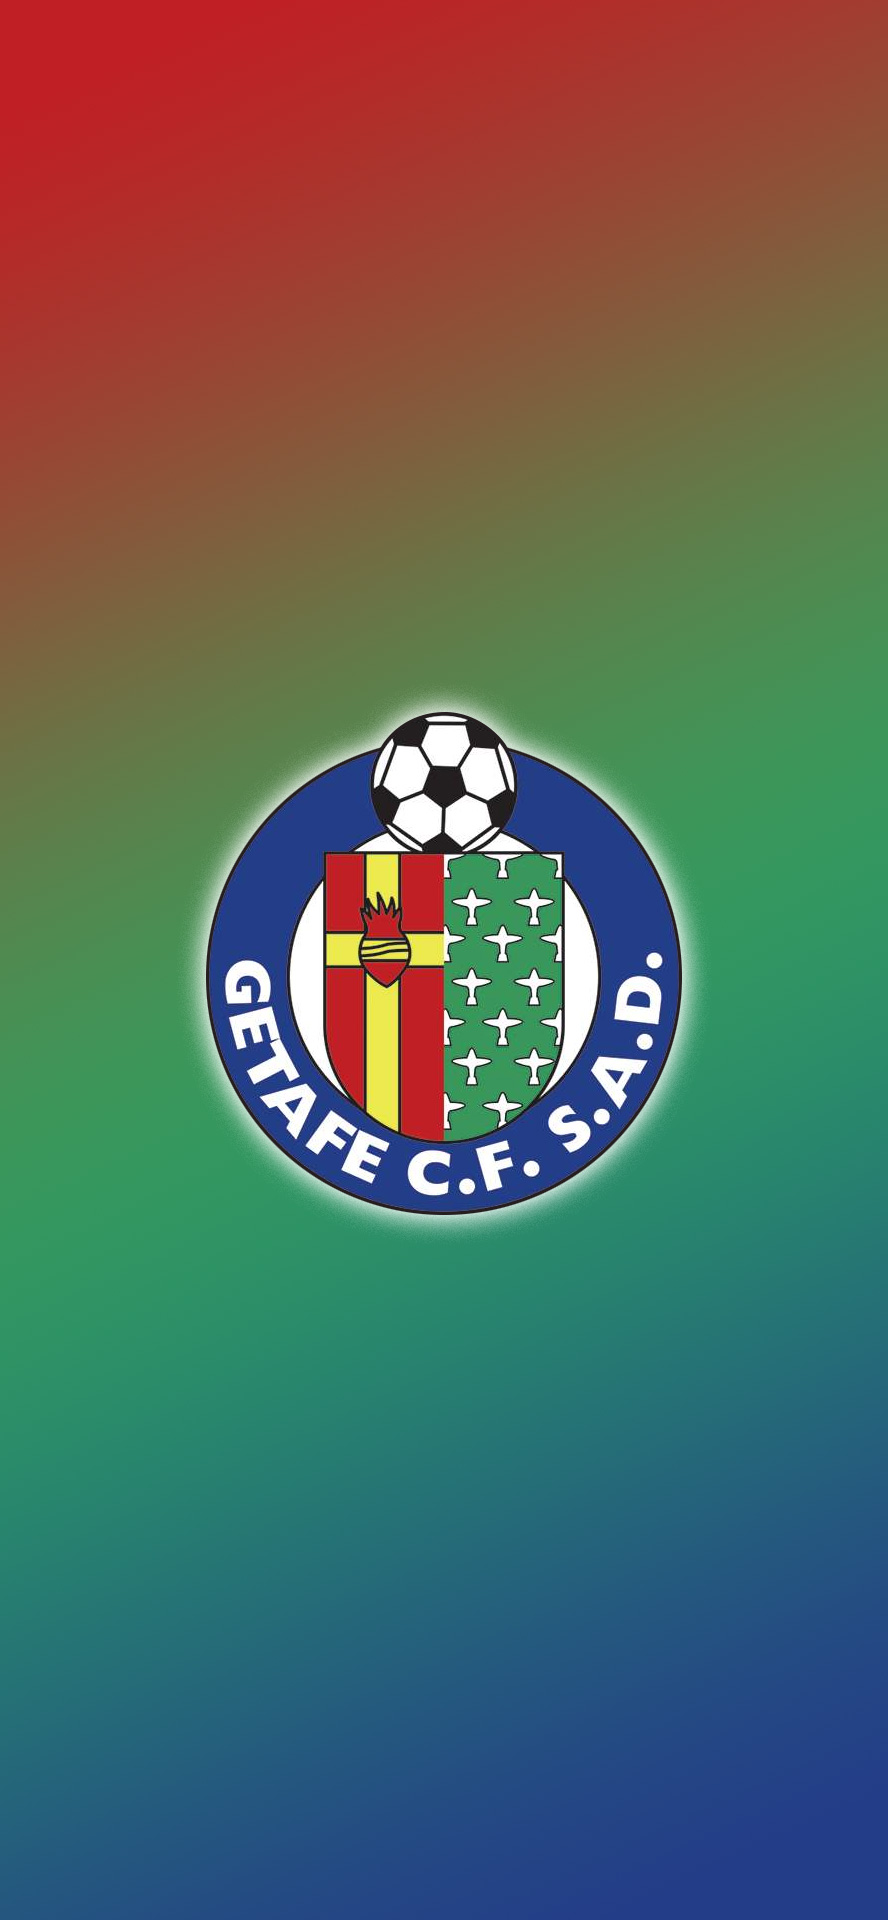 西甲联赛球队logo壁纸(一)